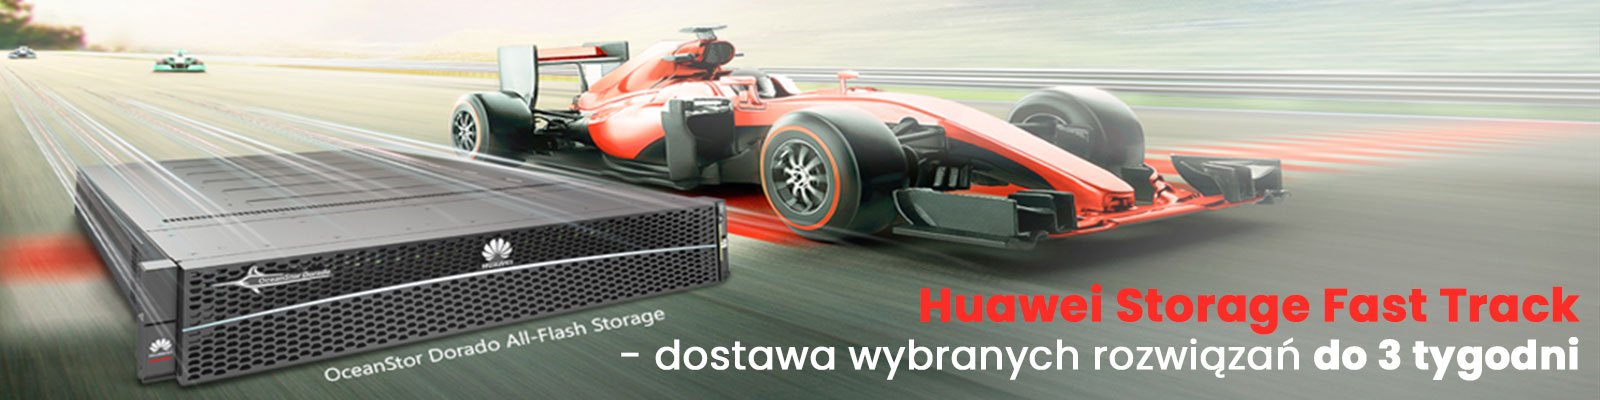 Huawei-Fast-Track